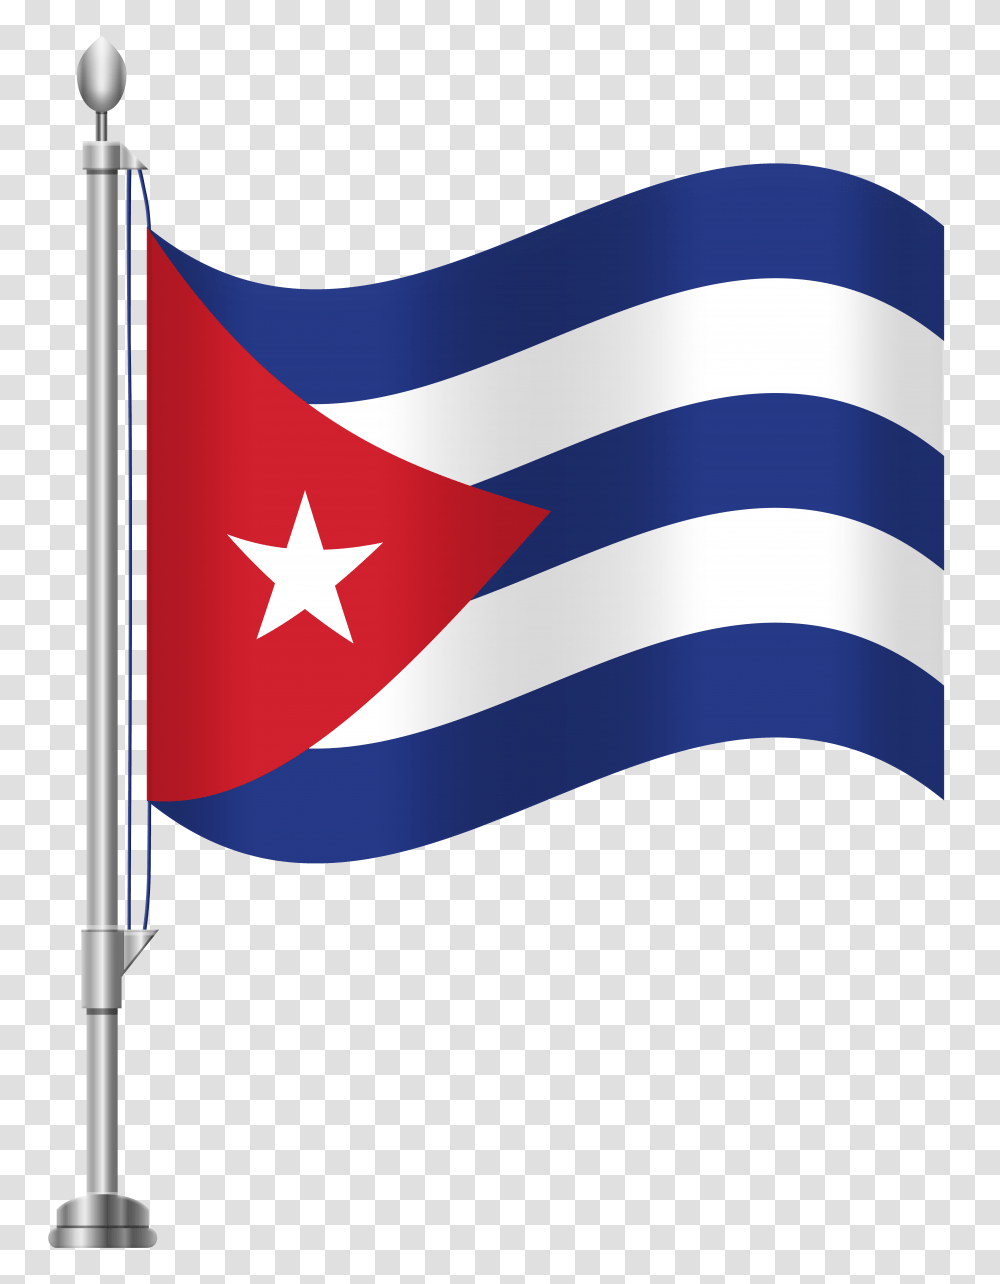 Cuba Flag Clip Art, American Flag, Axe, Tool Transparent Png